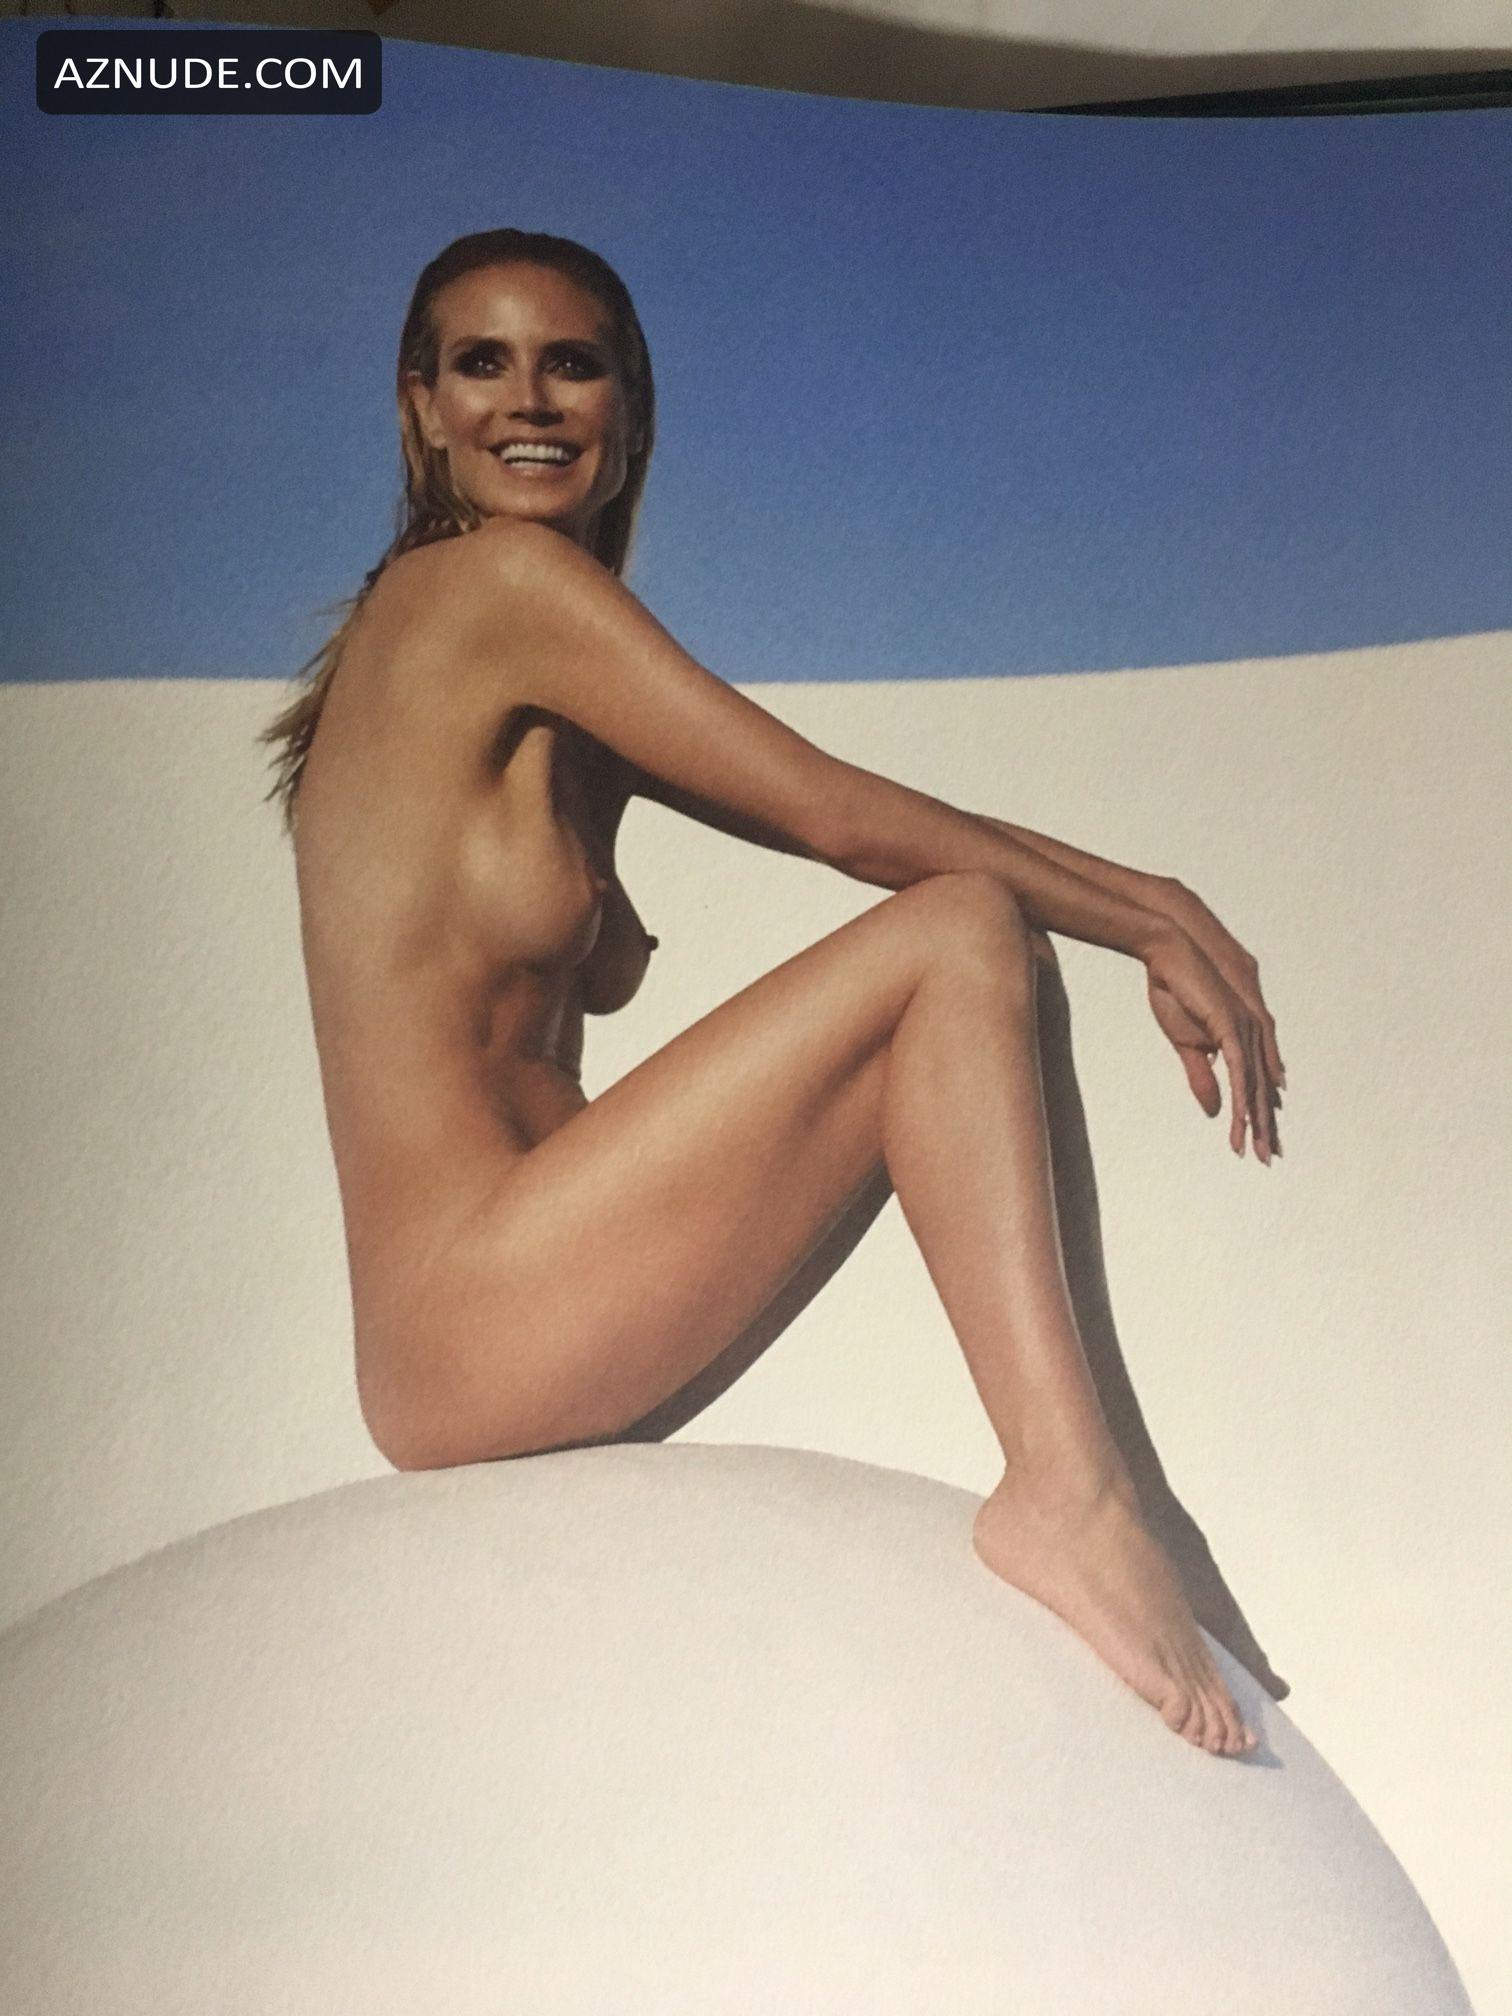 Heidi Klum Nude Photos For New Book By Rankin Aznude 